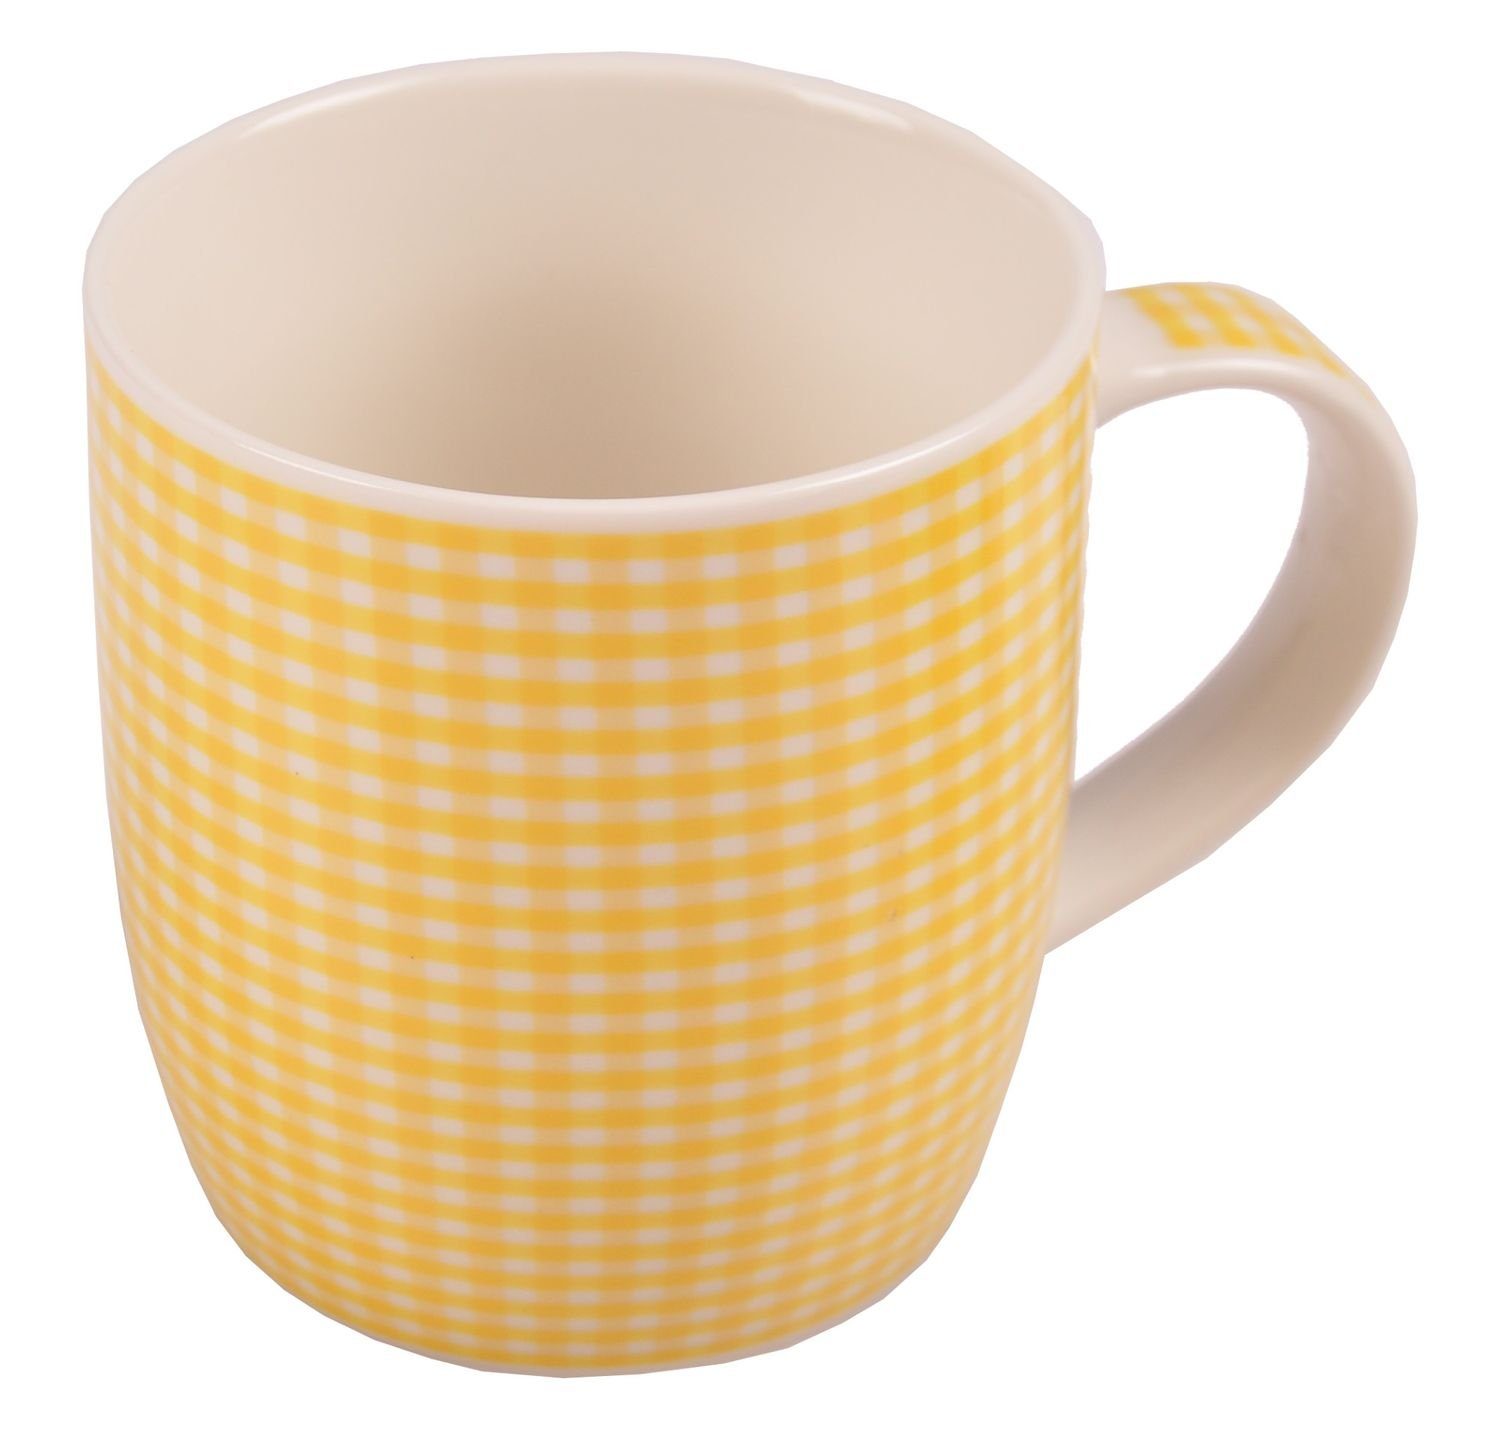 BURI Tasse Кофейные чашки kariert aus Porzellan 375ml Kaffeebecher Kaffeetasse, Porzellan